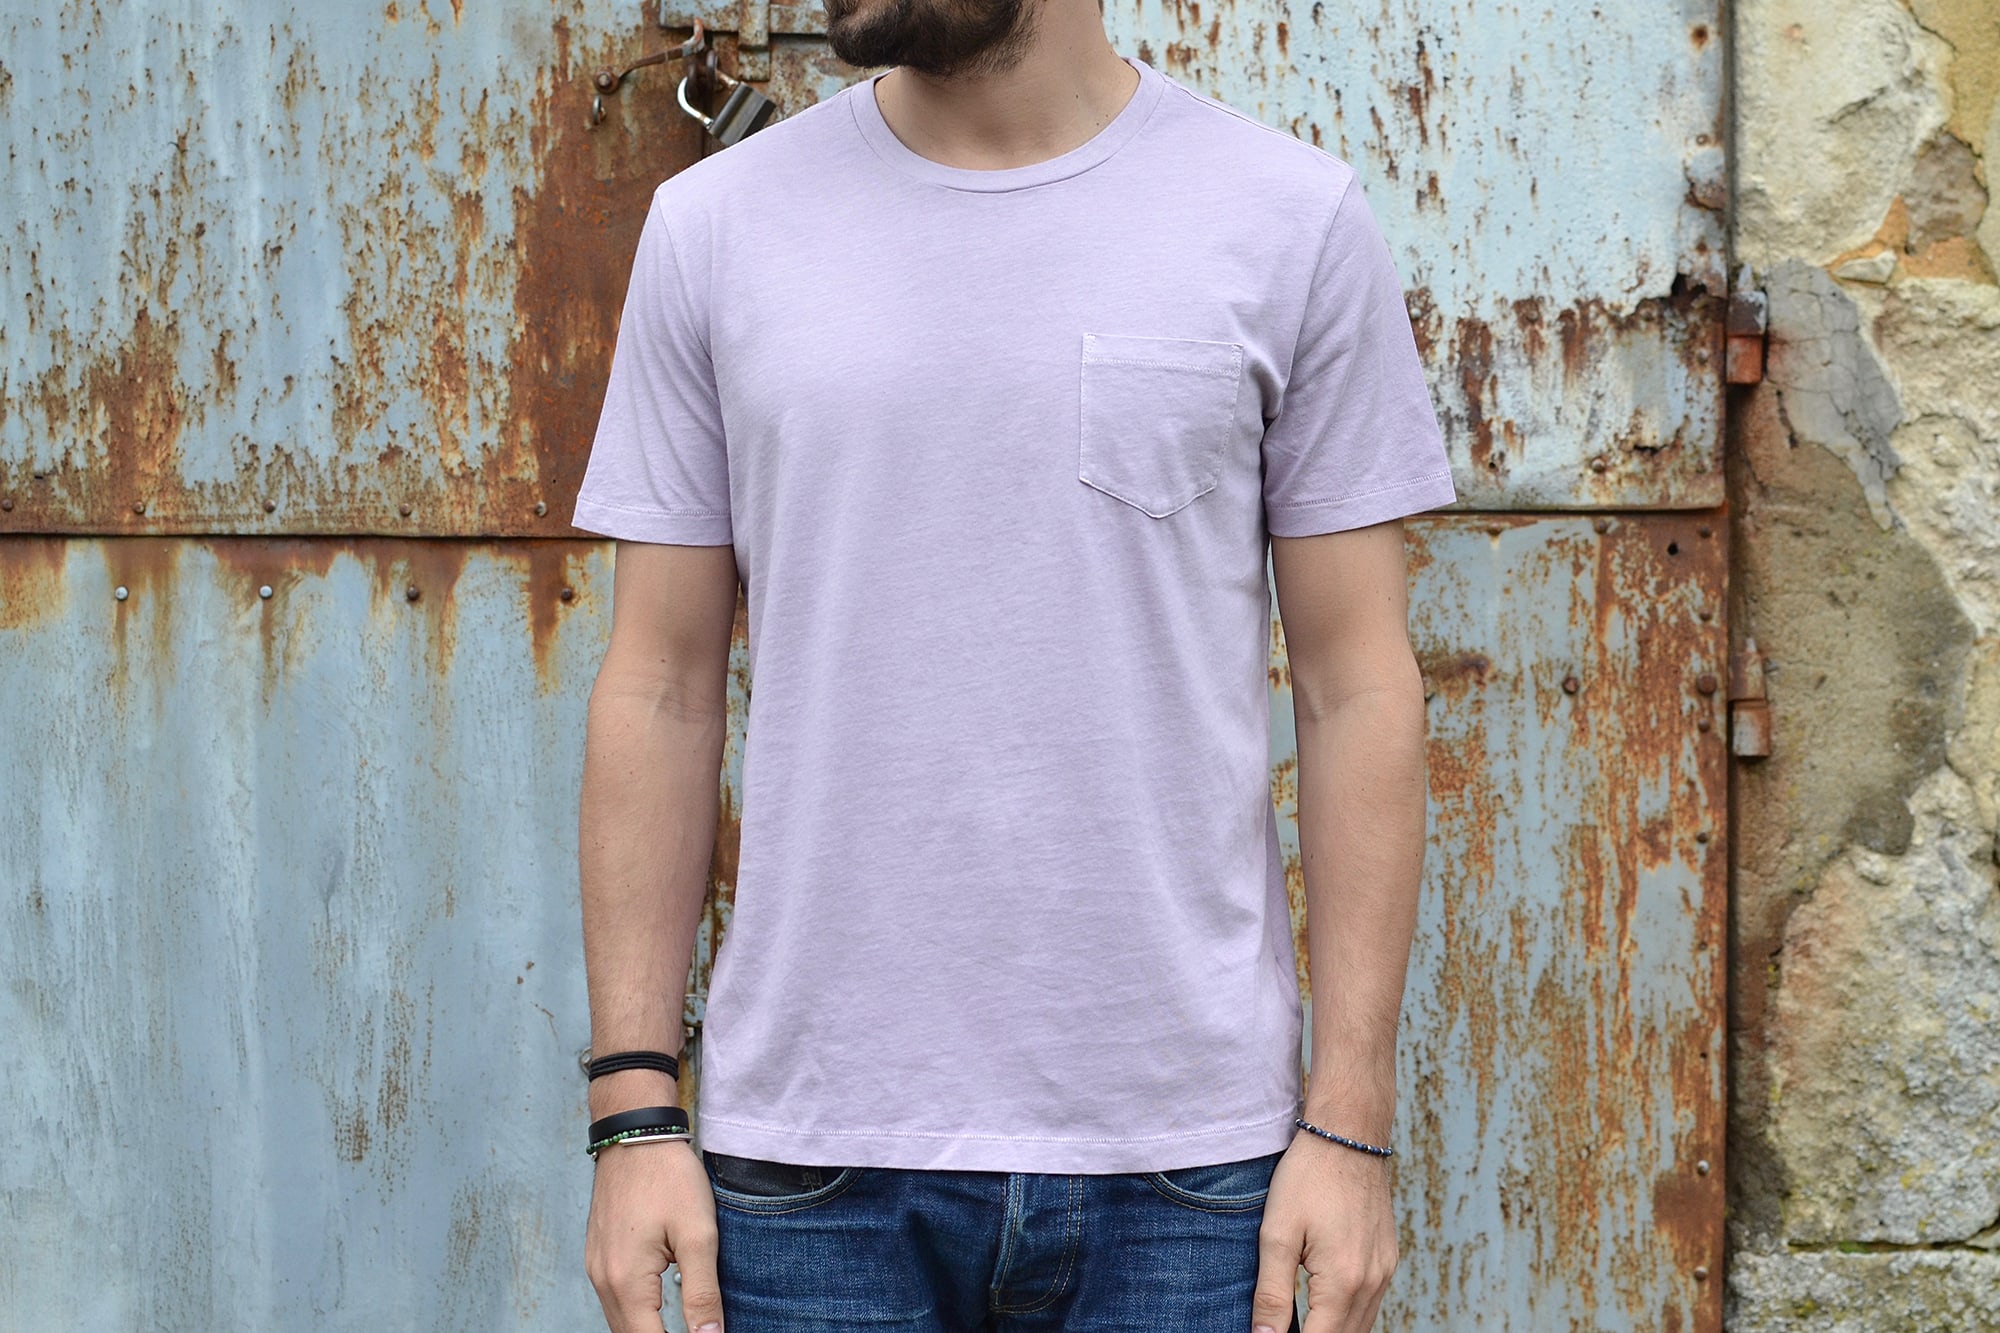 GAP un bon choix de tee shirt rose / violet / lavande pour un homme